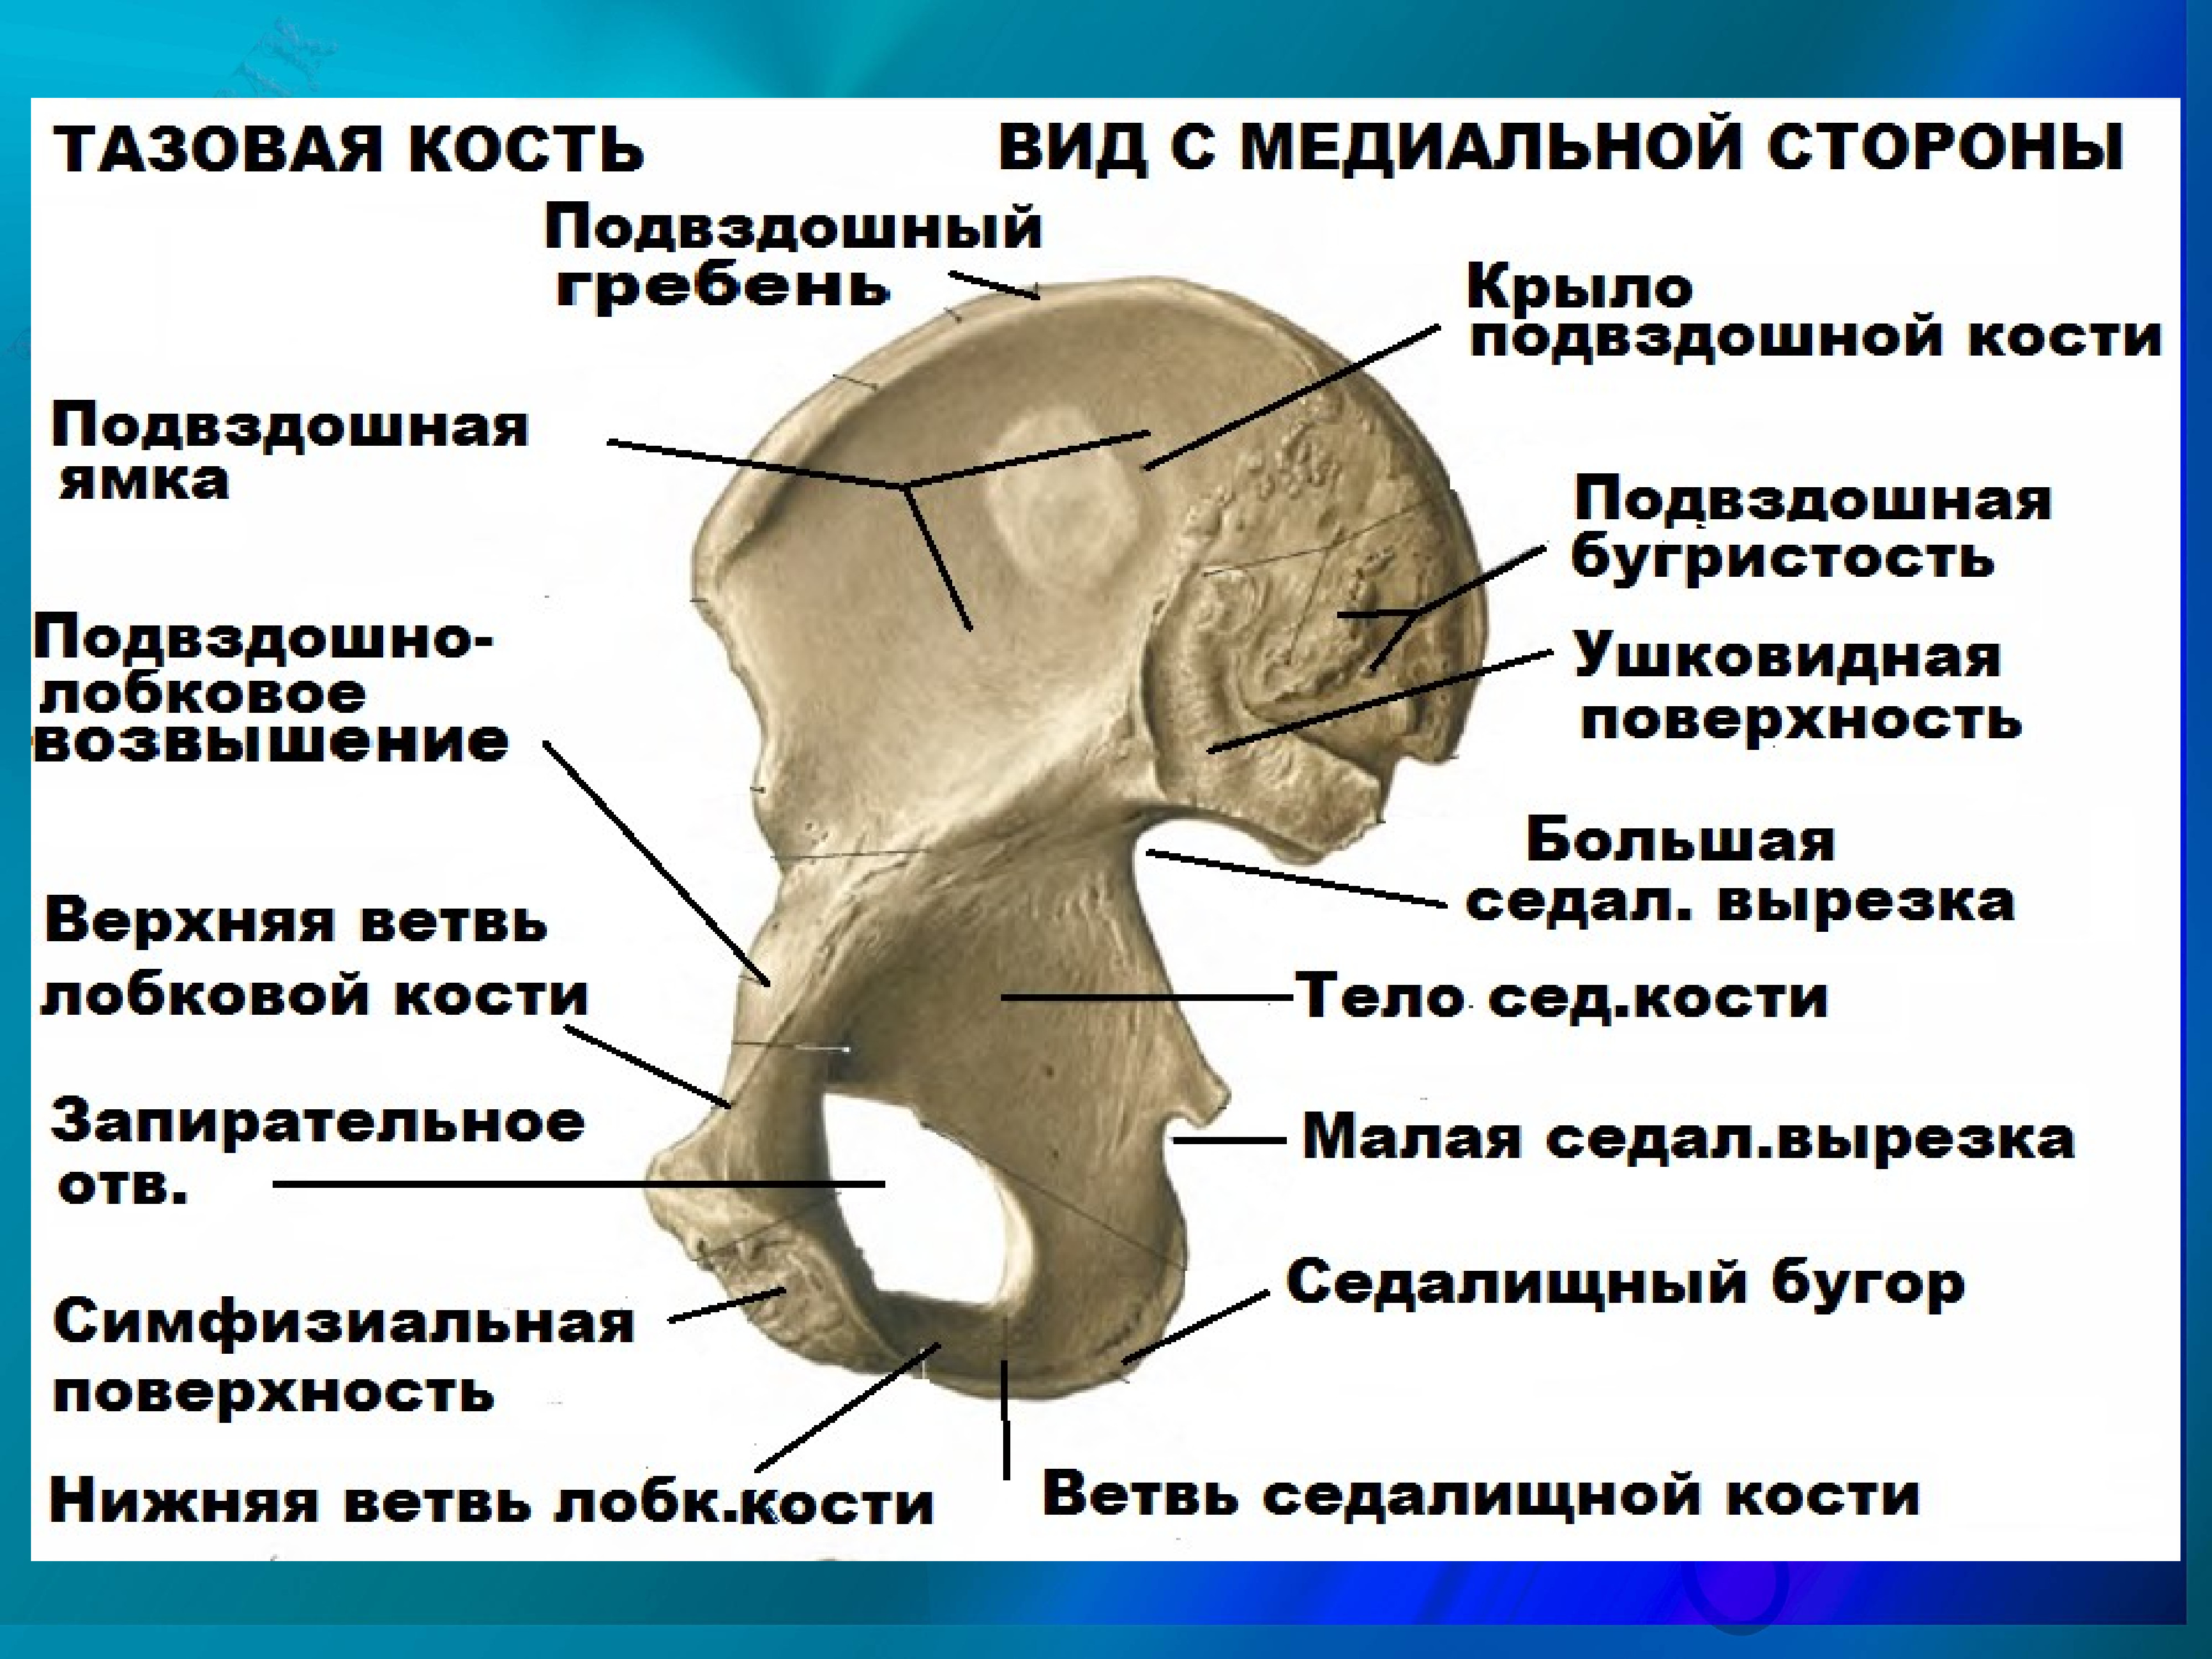 Передняя подвздошная кость. Седалищная кость кость анатомия. Подвздошная кость анатомия строение. Подвздошный гребень анатомия. Тазовая кость ушковидная поверхность.